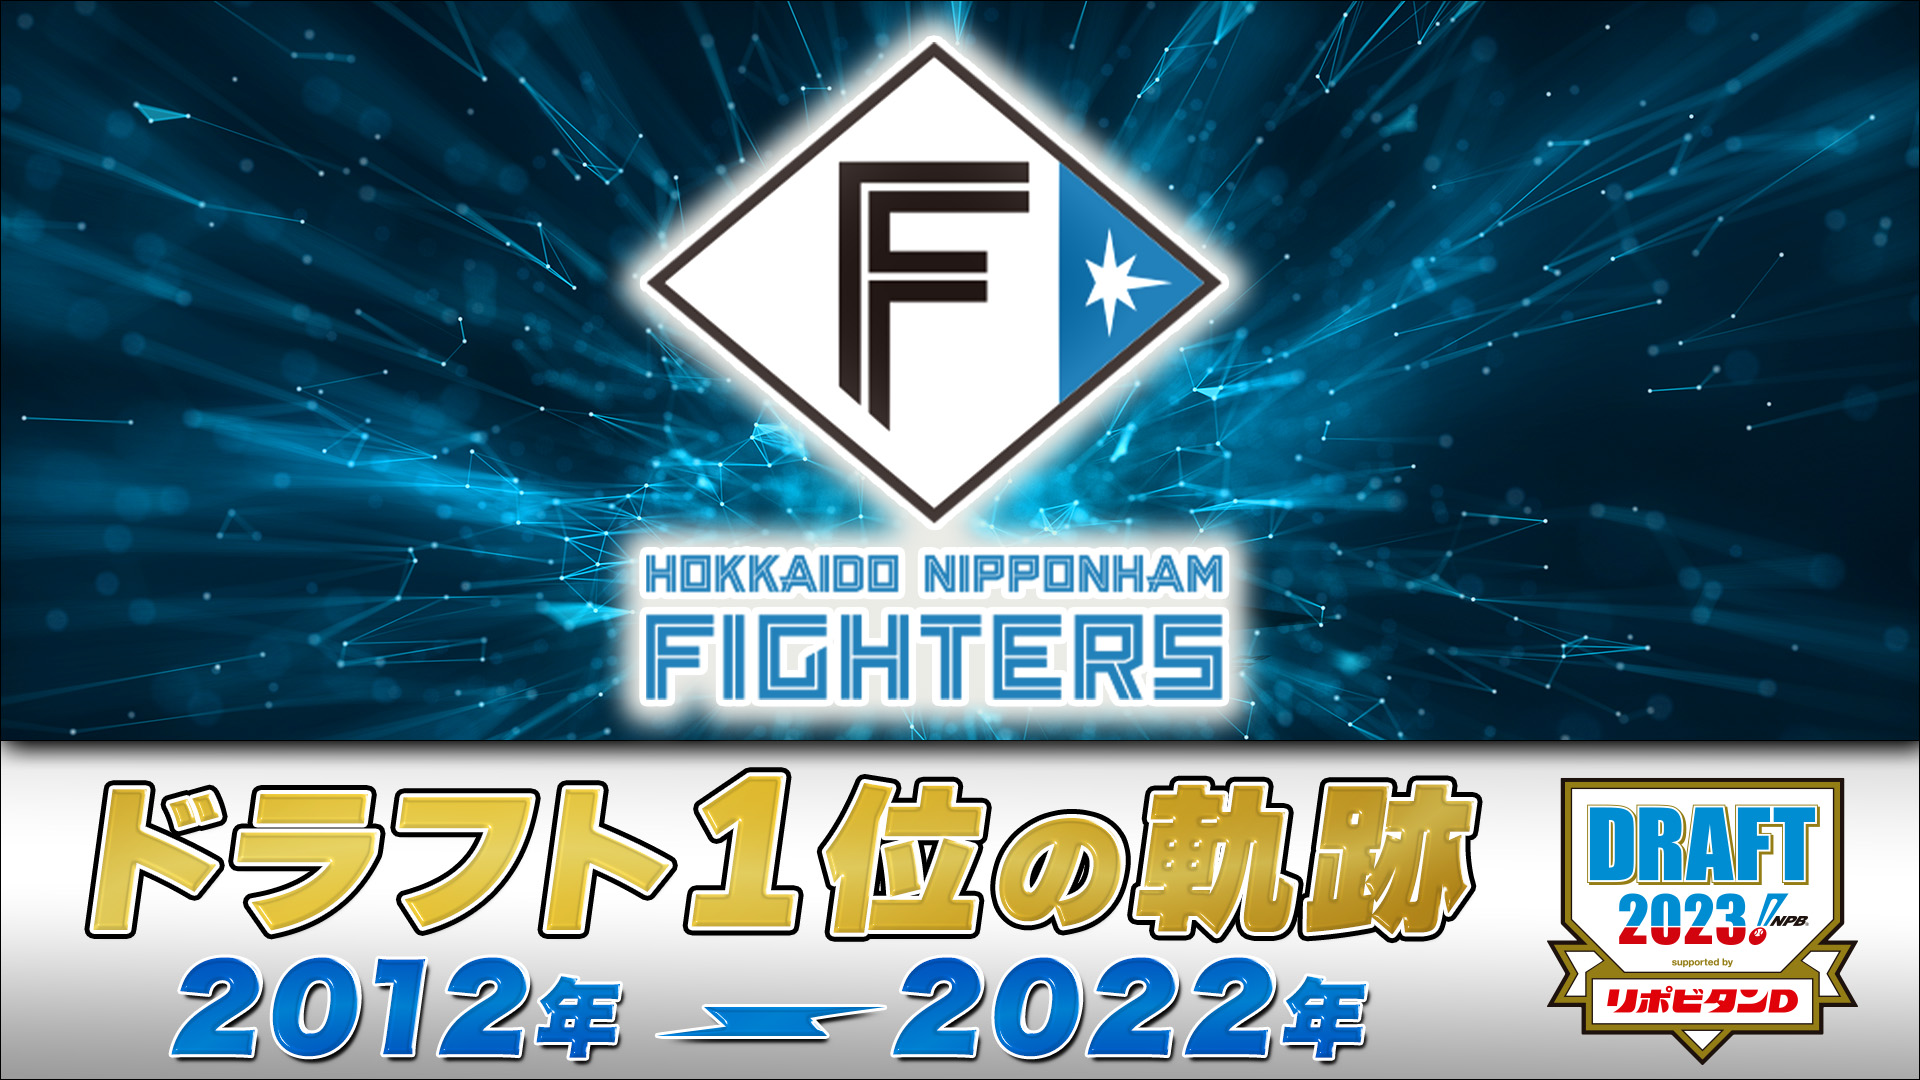 [分享] 北海道火腿鬥士10年來一指 2012-2022